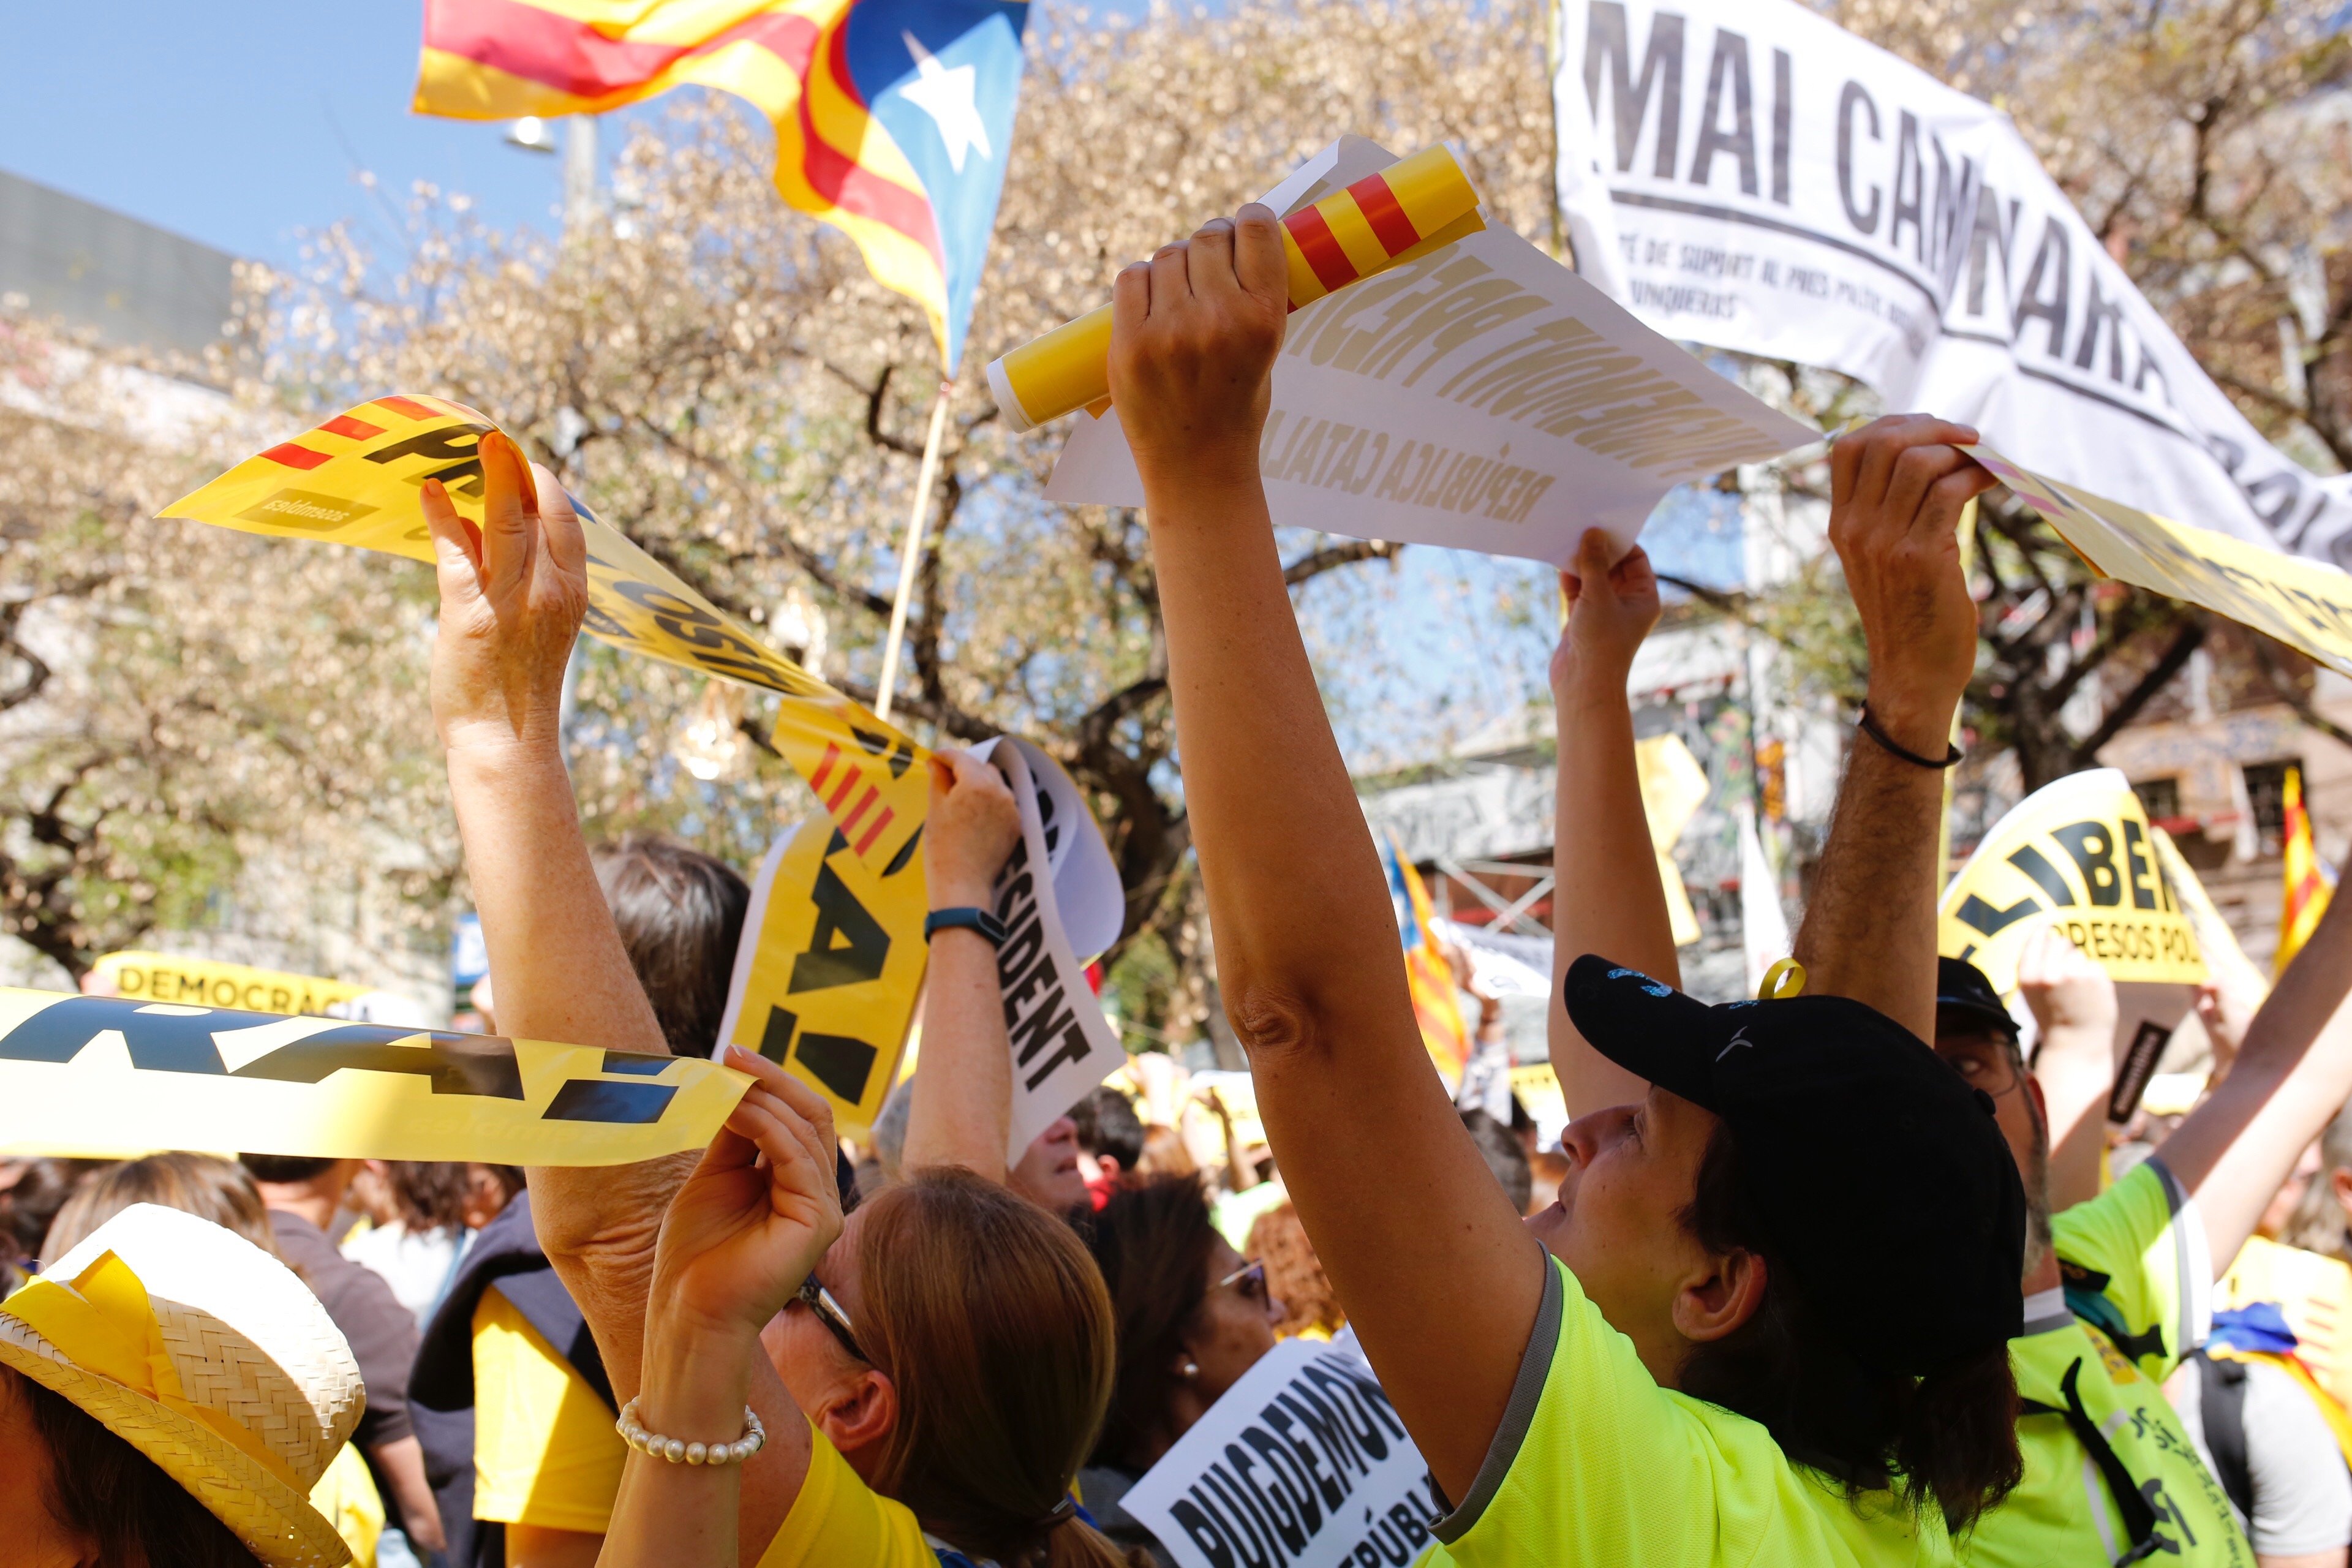 Libération: "Una manifestació gegant a Barcelona"